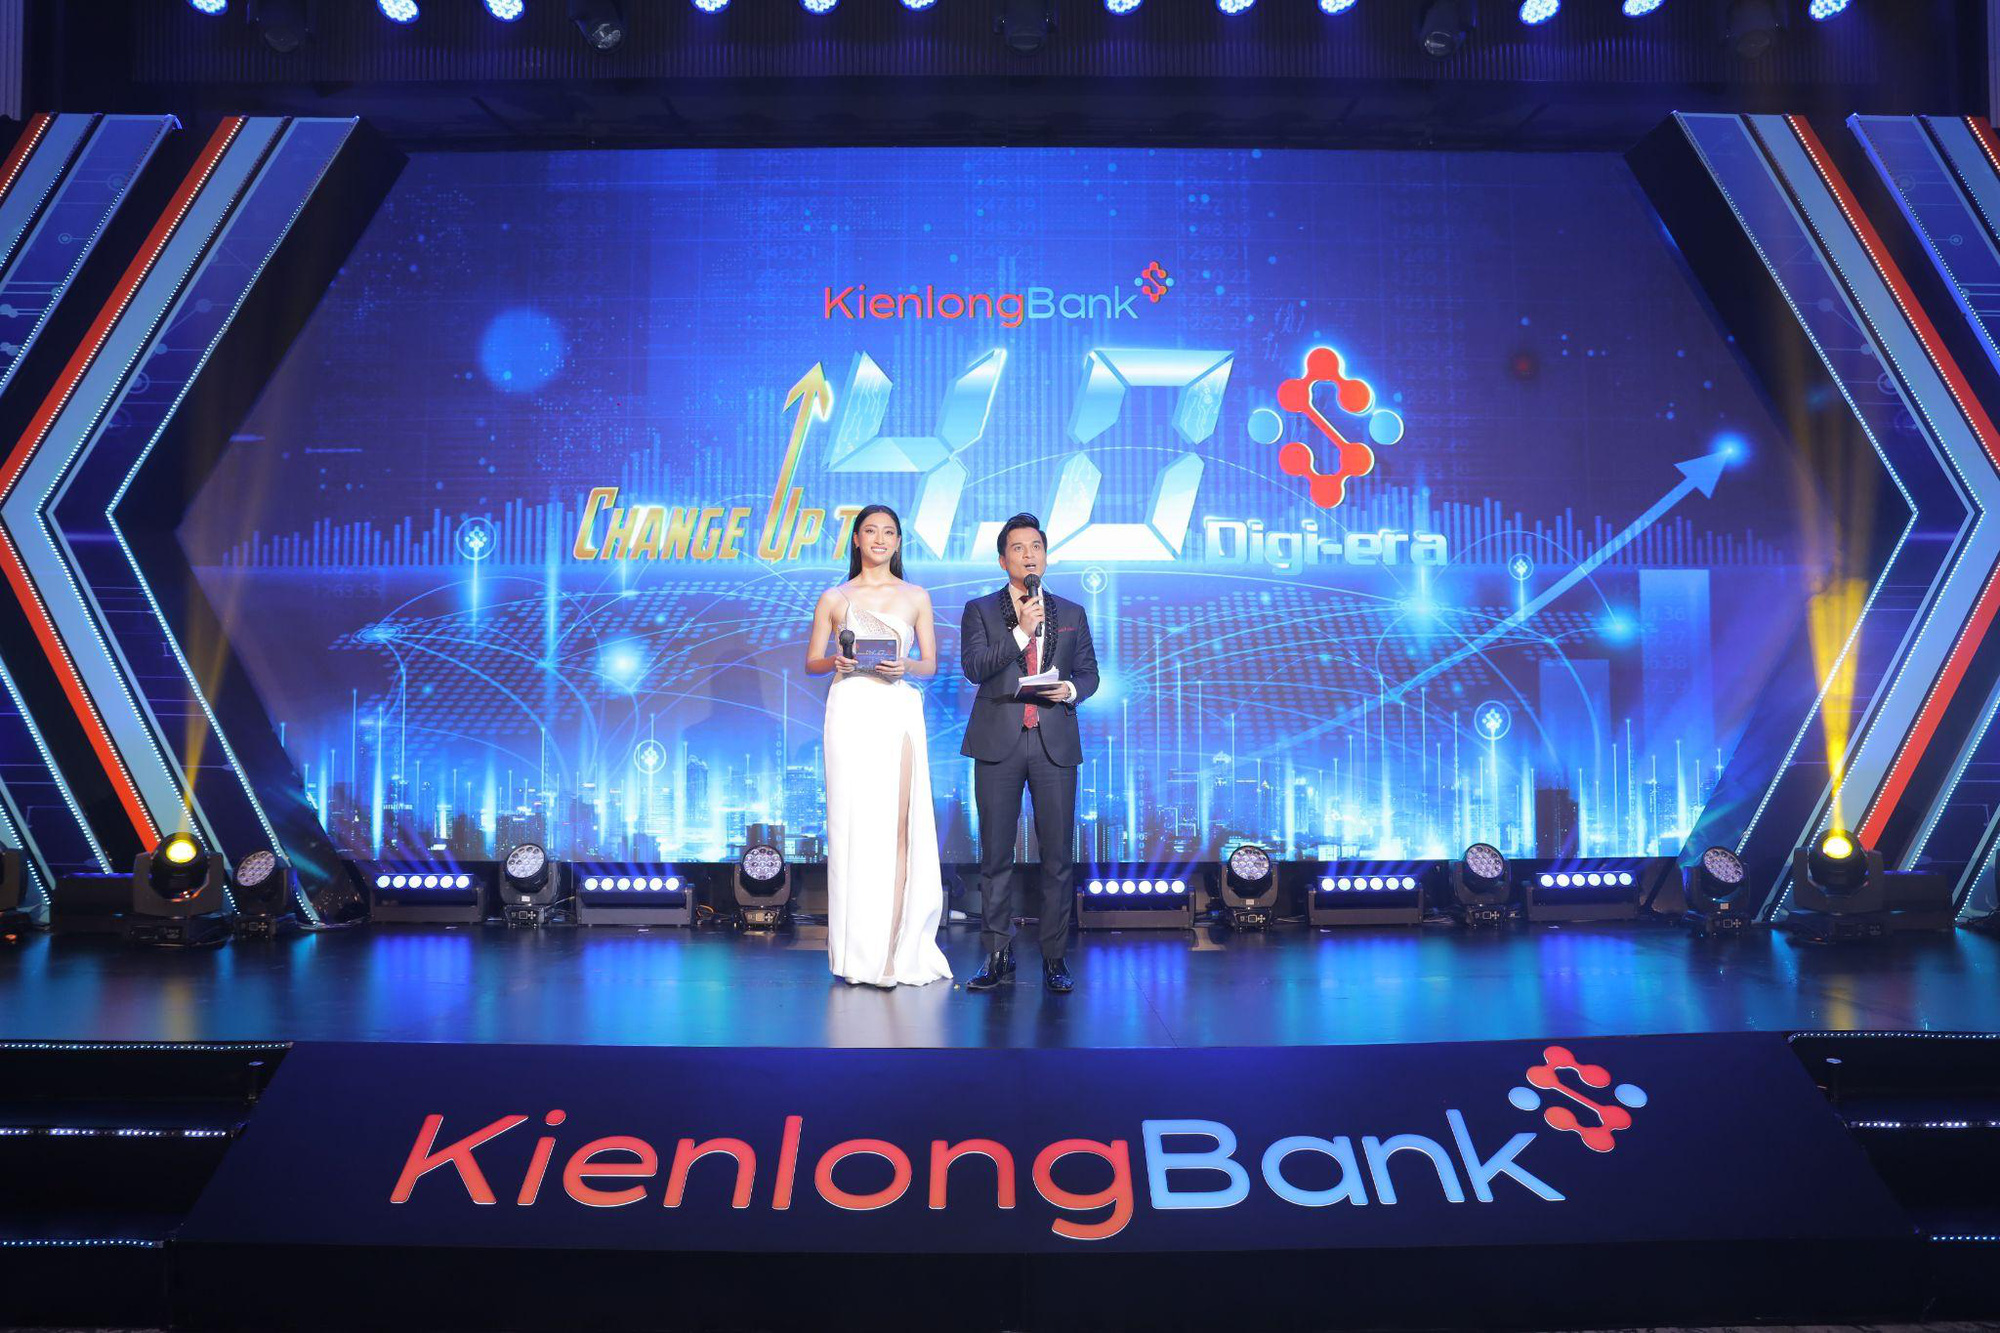 Mãn nhãn với chương trình biểu diễn nghệ thuật tại sự kiện kỷ niệm 26 năm KienlongBank - Ảnh 1.